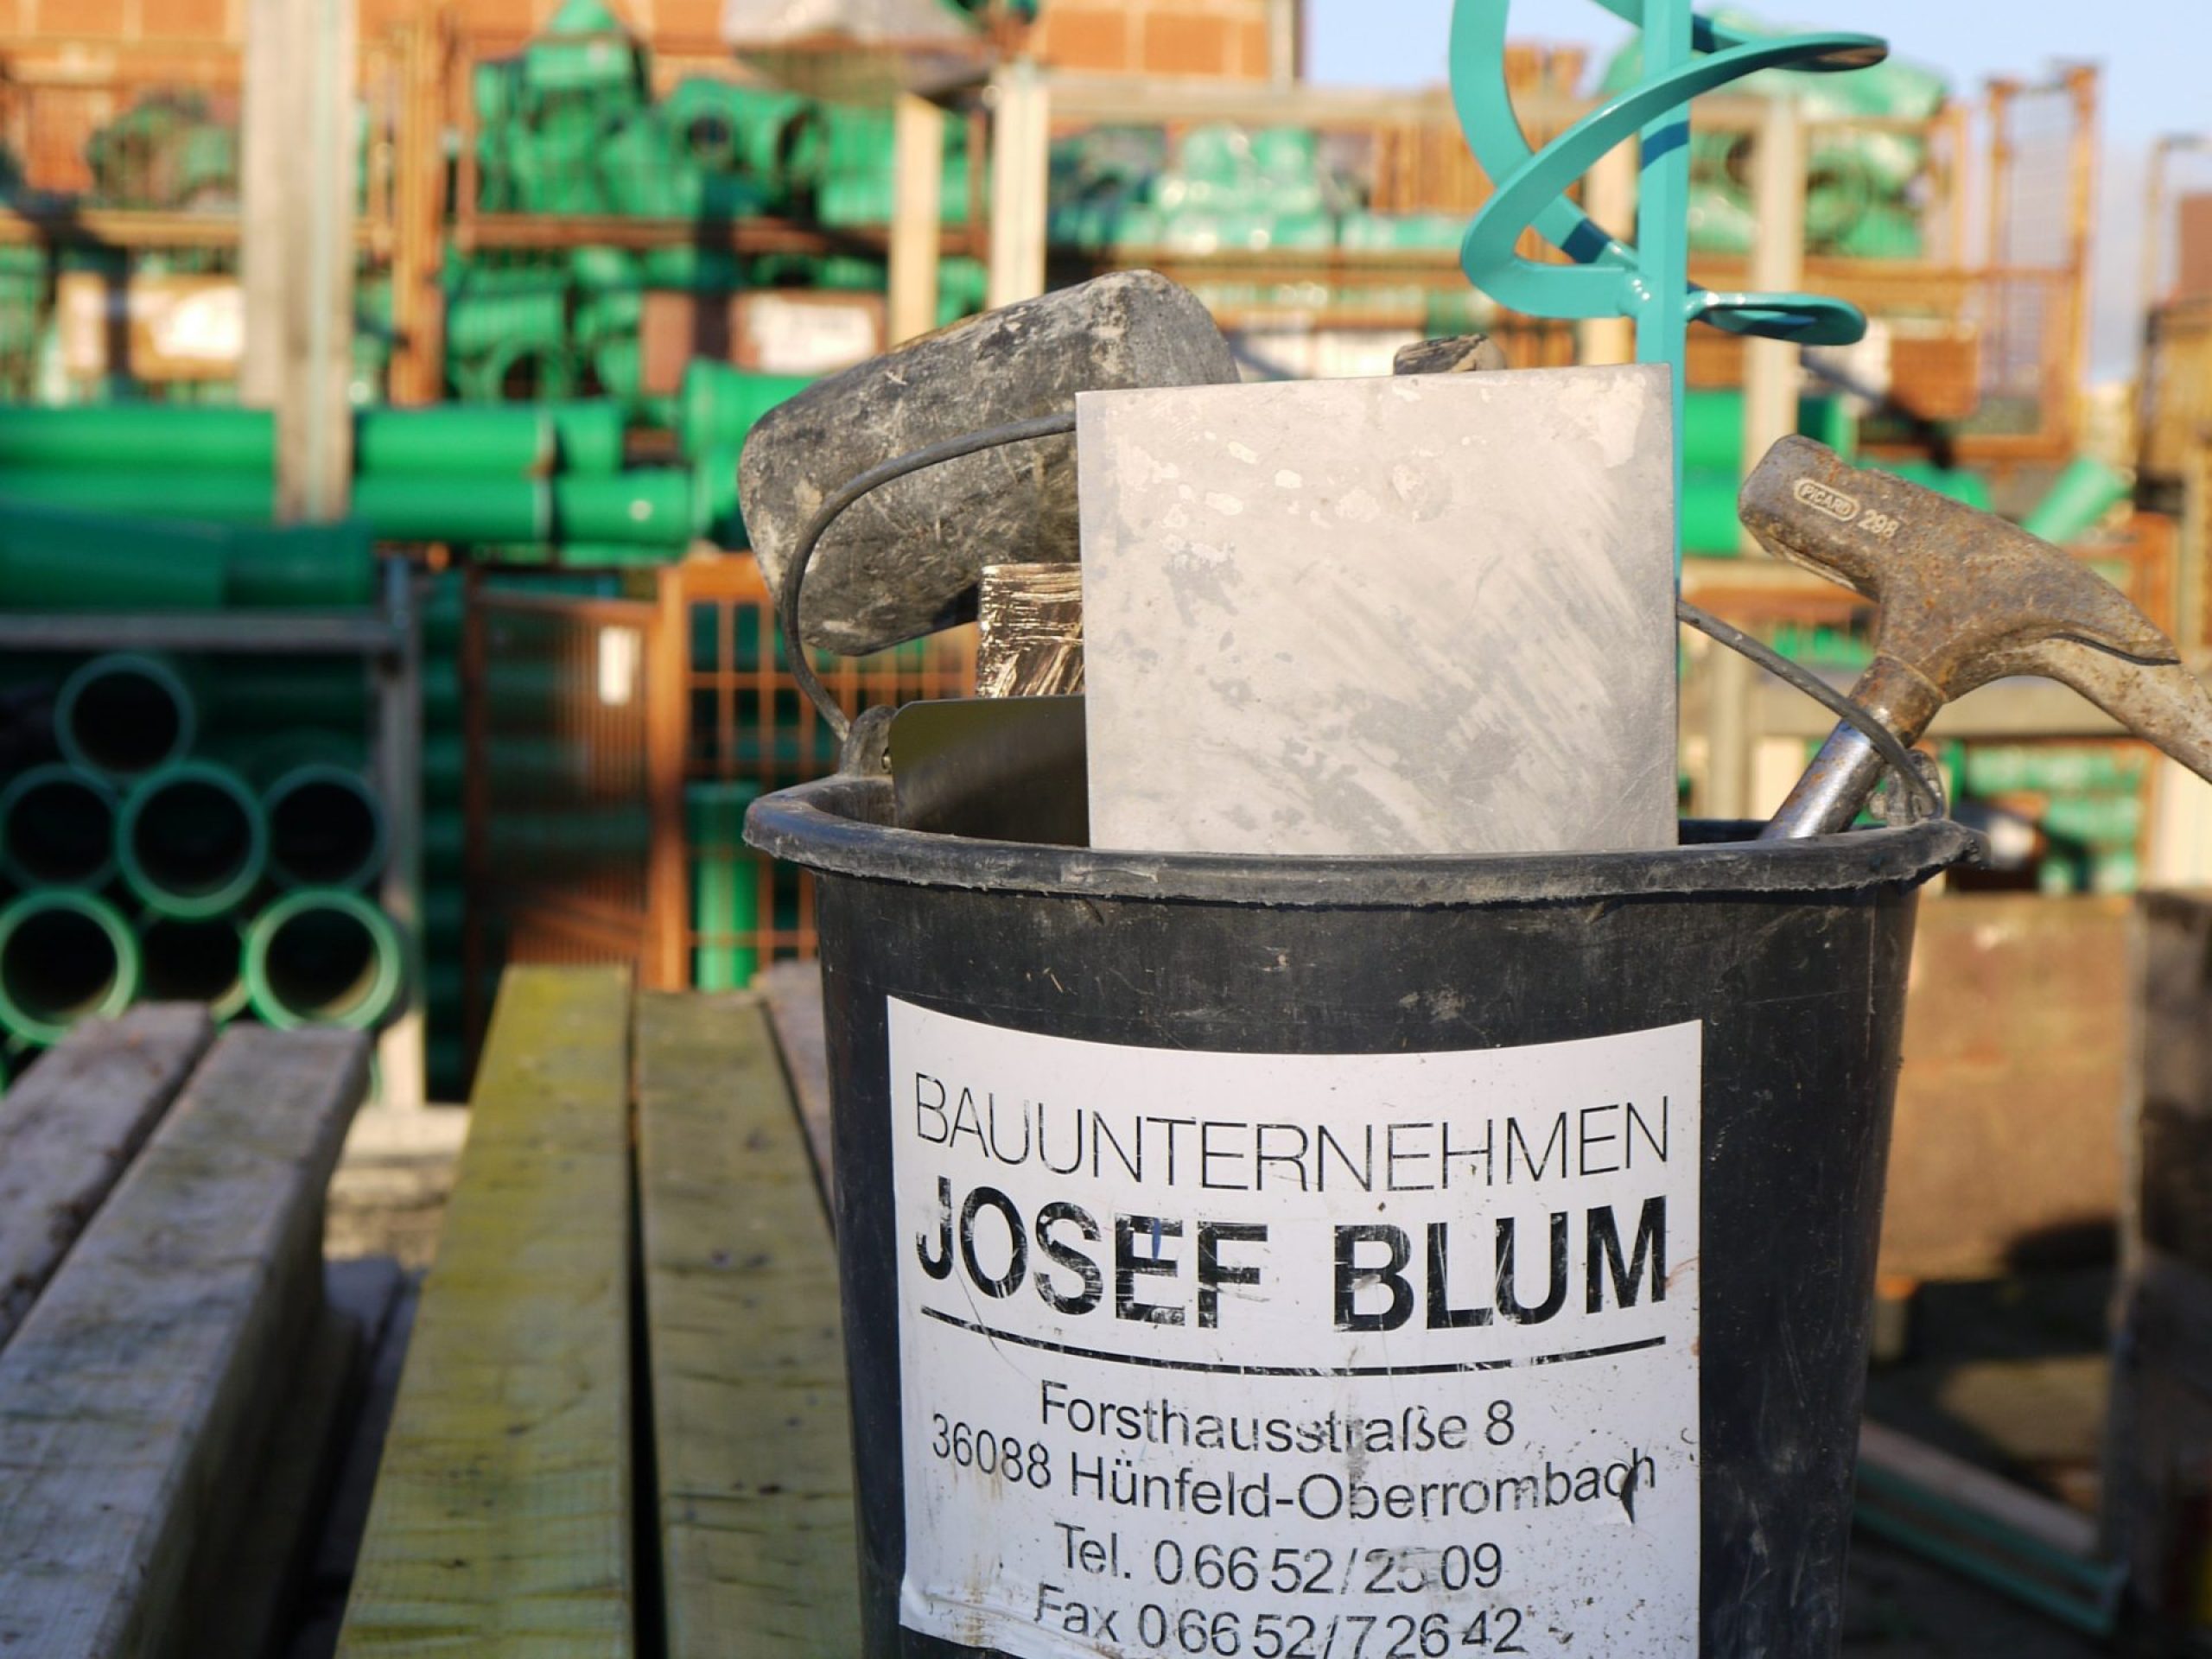 Bauunternehmen-Blum-Huenfeld-Jobs-bild2.1-komprimiert